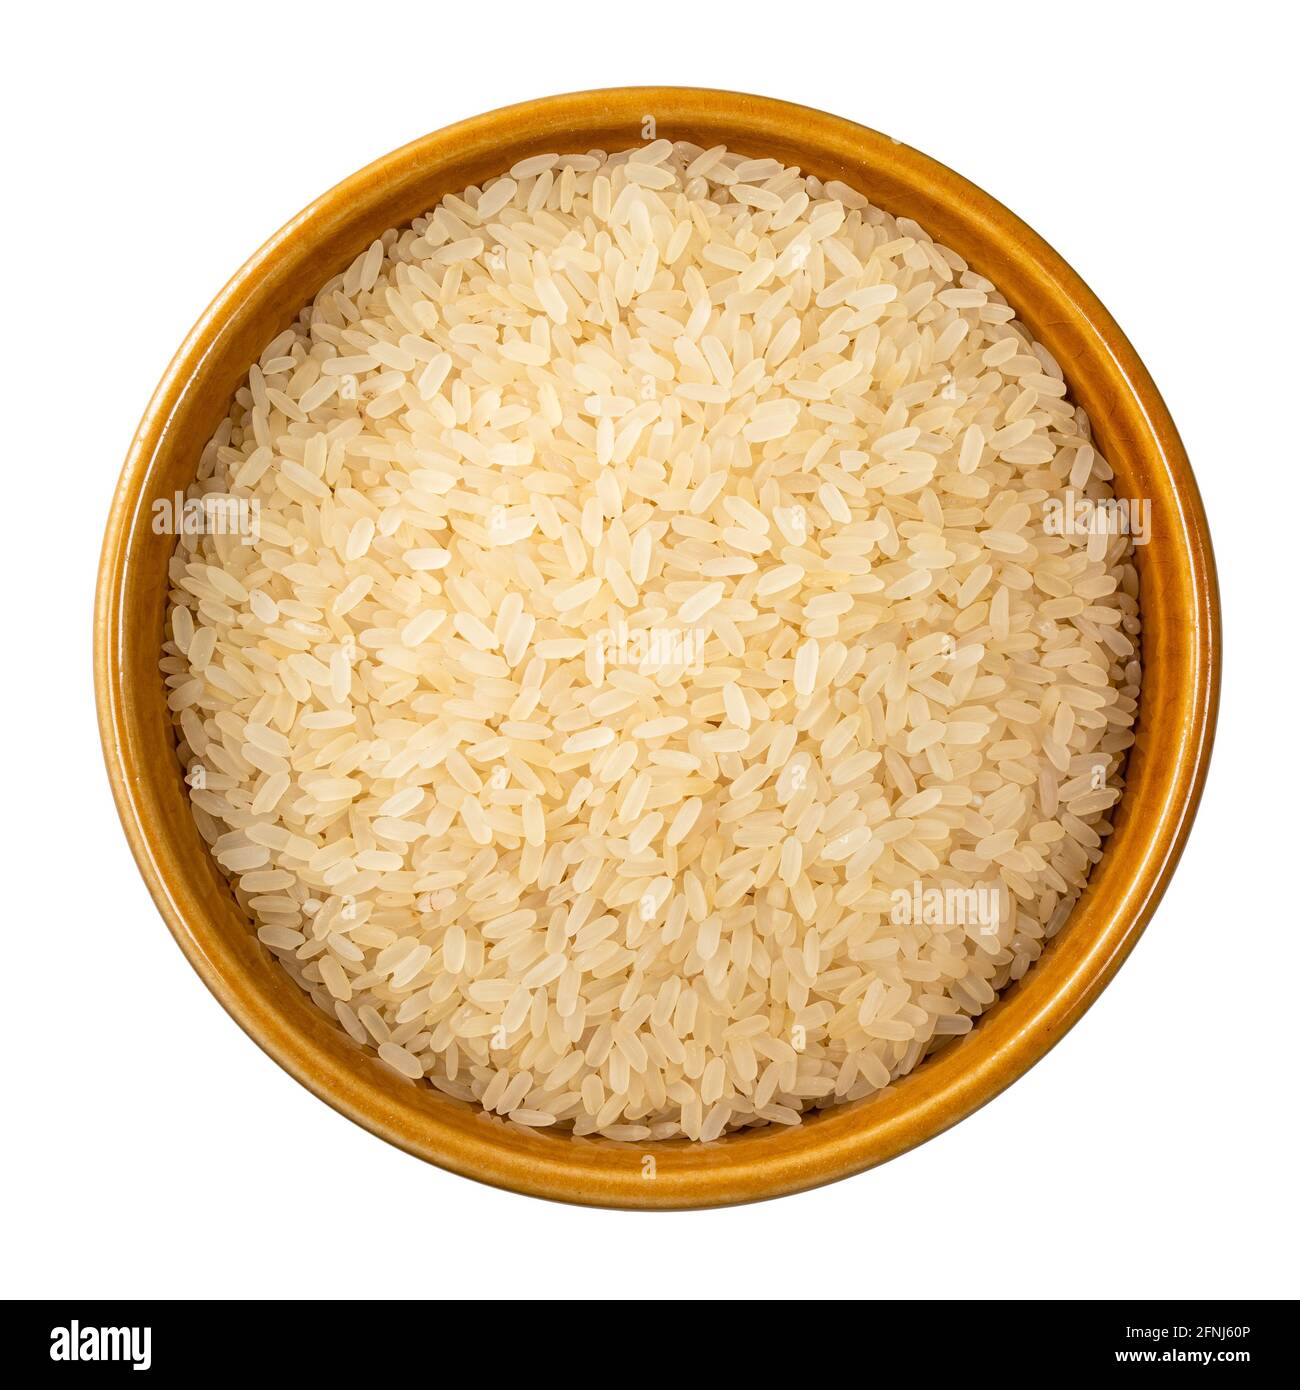 vue de dessus du riz cru étuvé dans un bol rond découpé sur fond blanc Banque D'Images